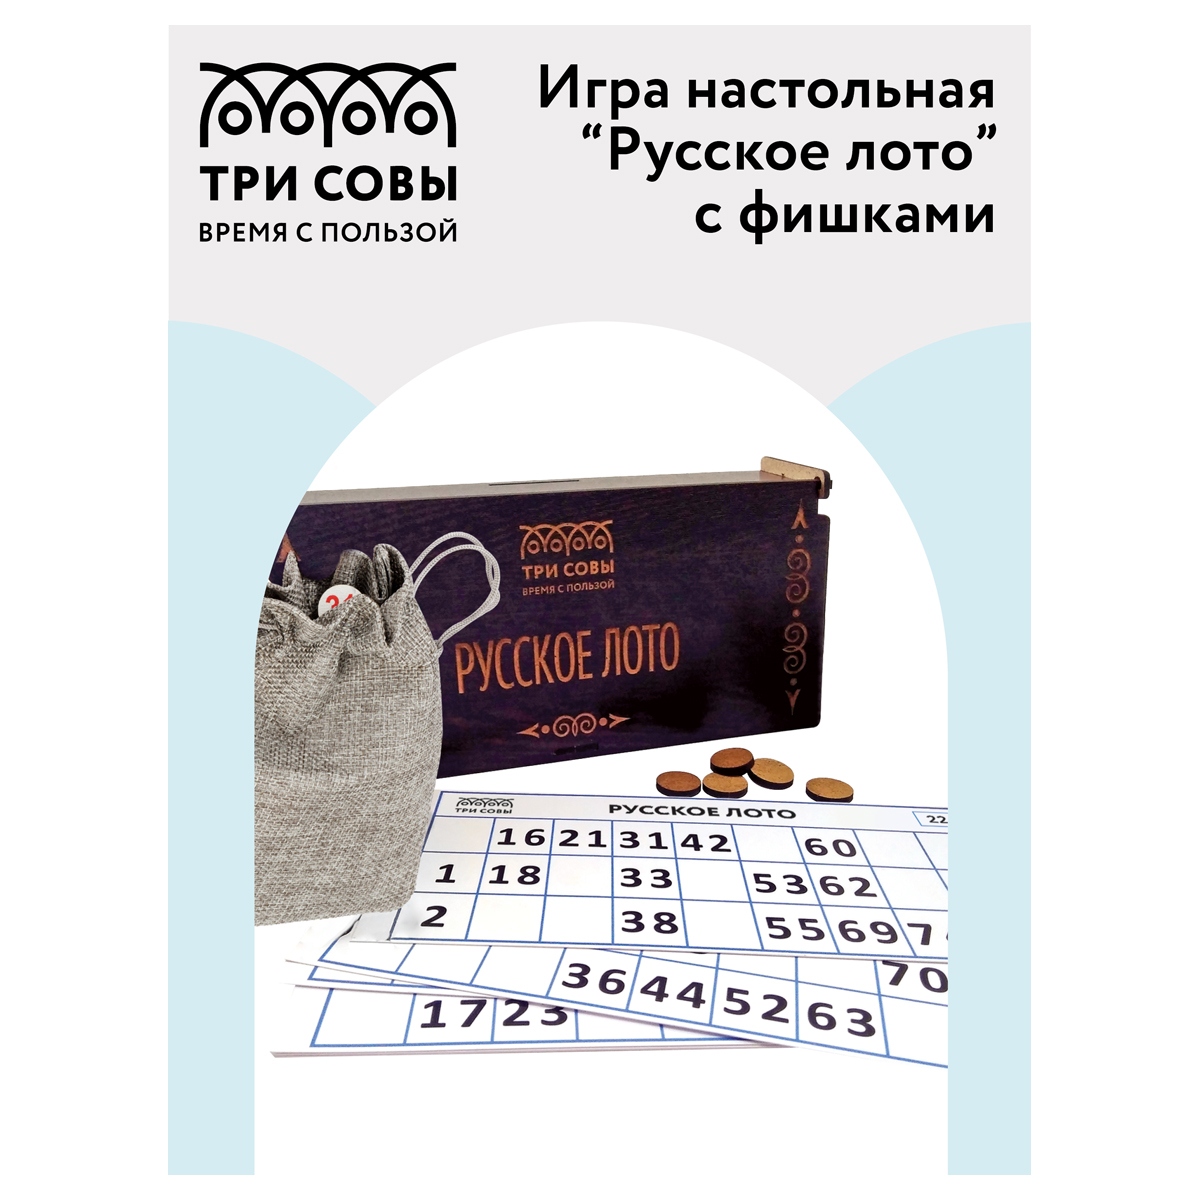 Игра настольная ТРИ СОВЫ "Русское лото", с фишками, шкатулка из ХДФ